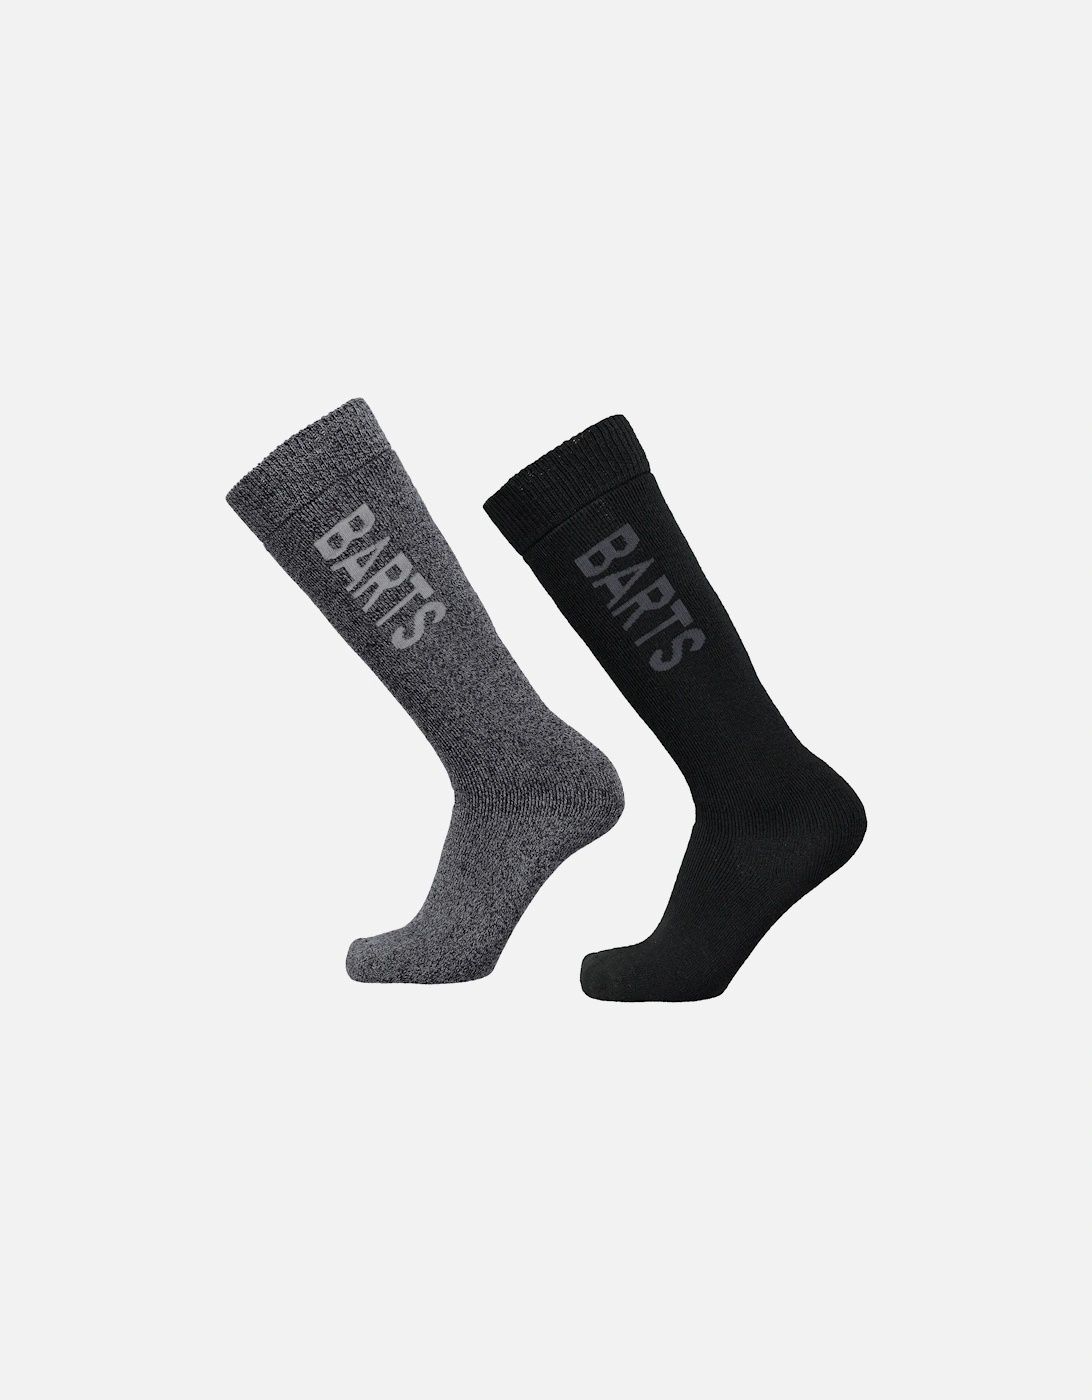 Mens Basic 2 Pack Moisture Wicking Ski Socks - Anthracite/Black, 2 of 1